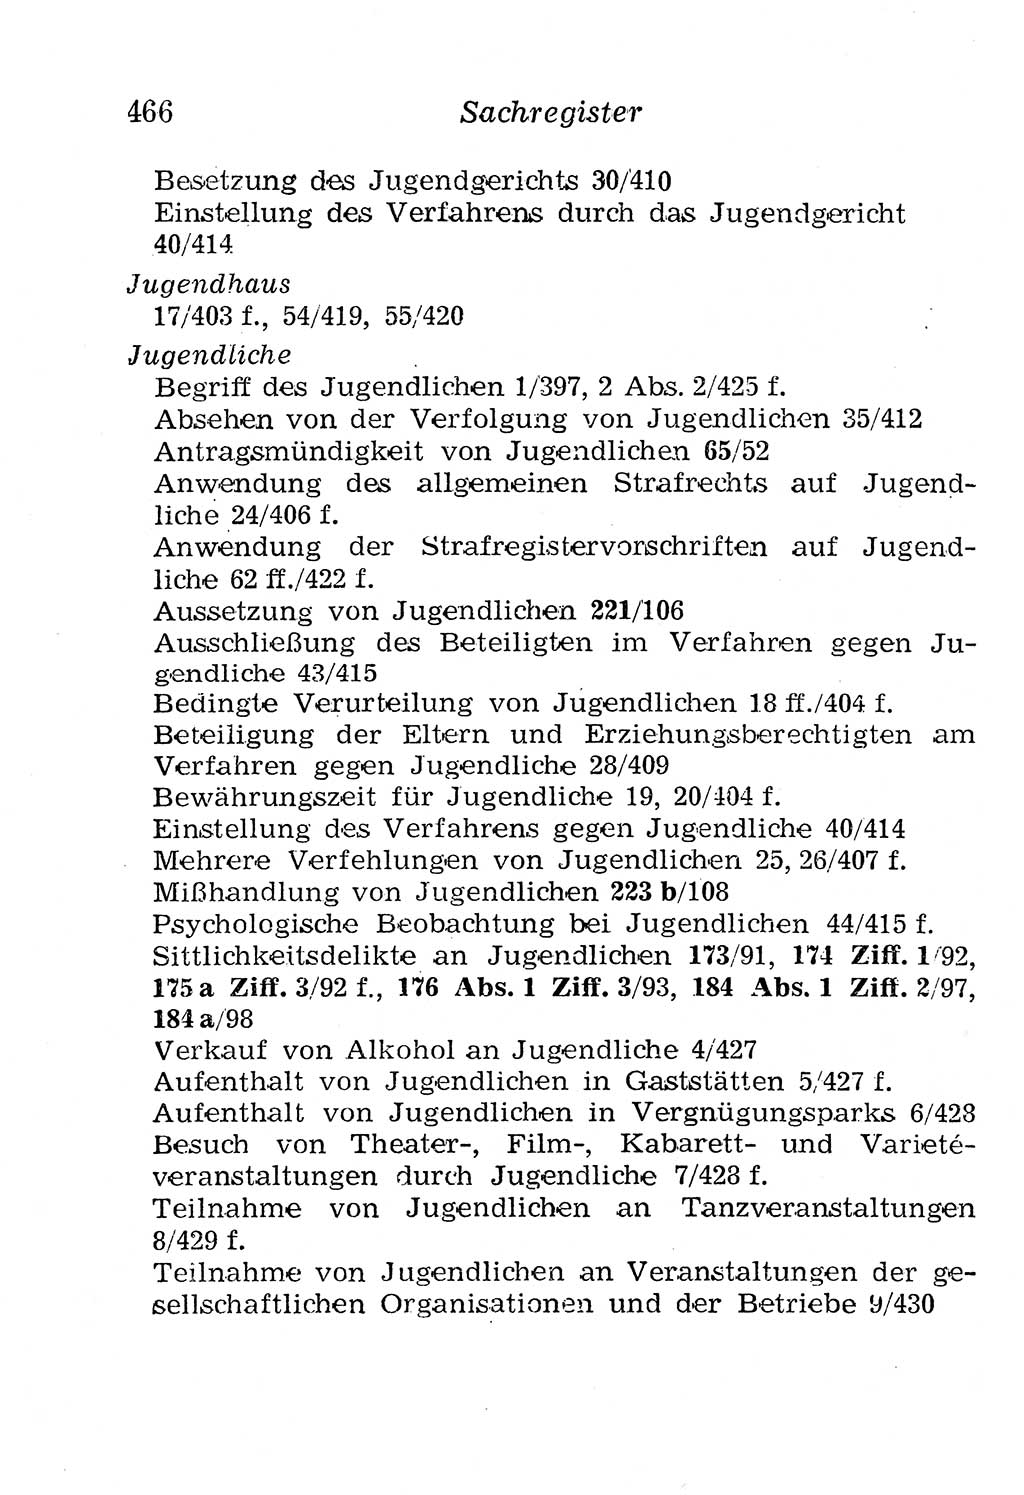 Strafgesetzbuch (StGB) und andere Strafgesetze [Deutsche Demokratische Republik (DDR)] 1958, Seite 466 (StGB Strafges. DDR 1958, S. 466)